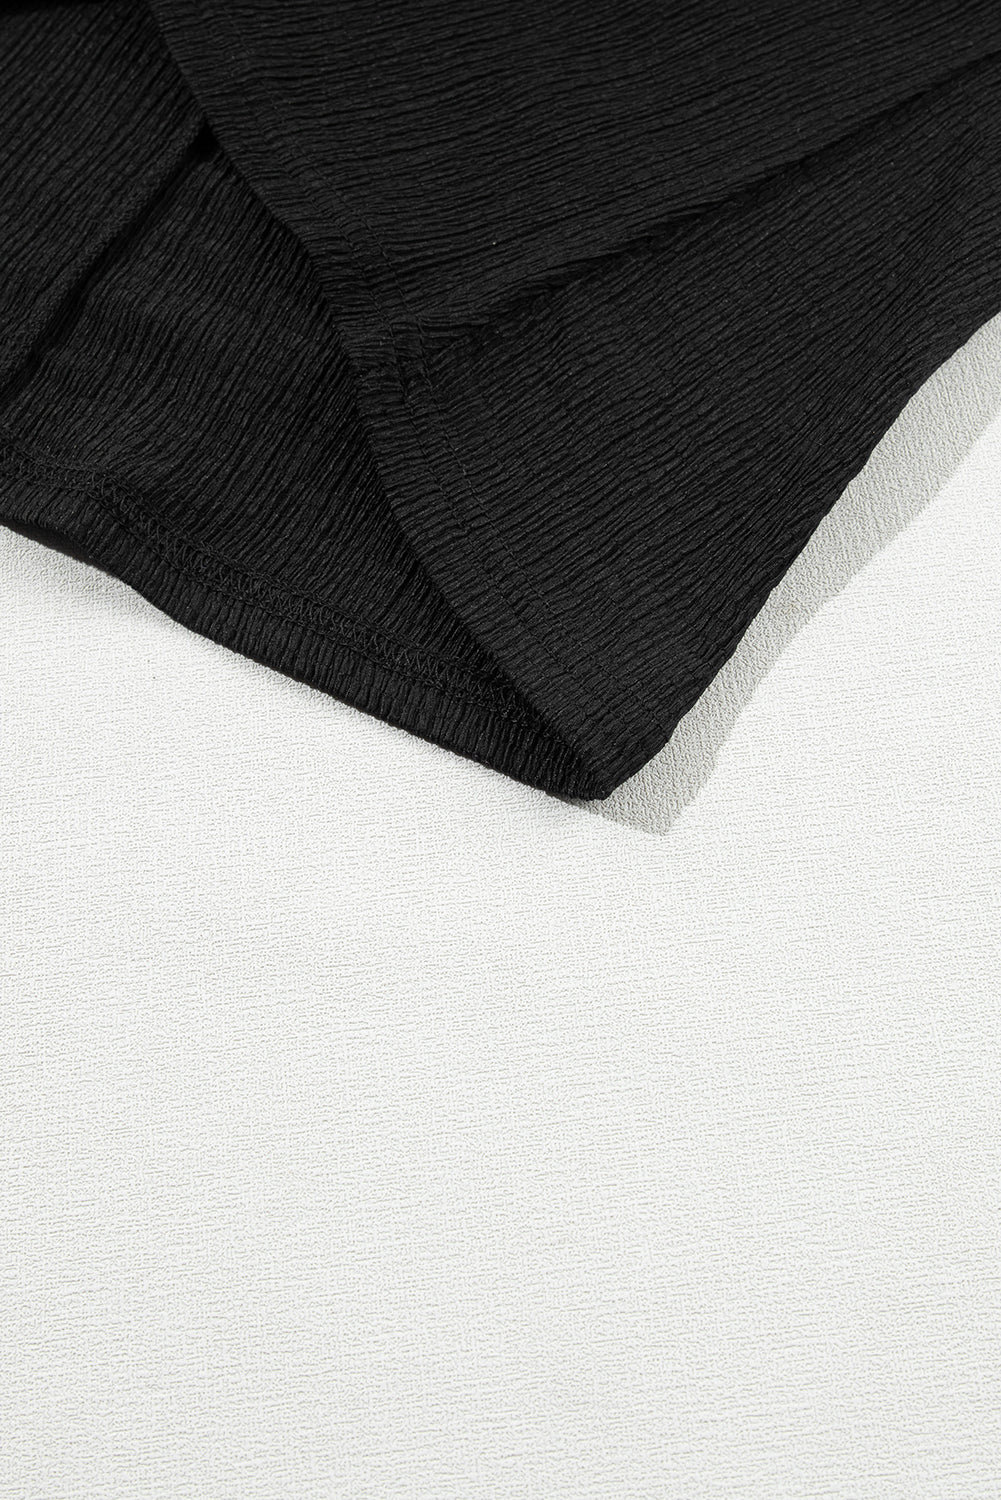 Black Crinkled V Neck Wide Sleeve T-shirt